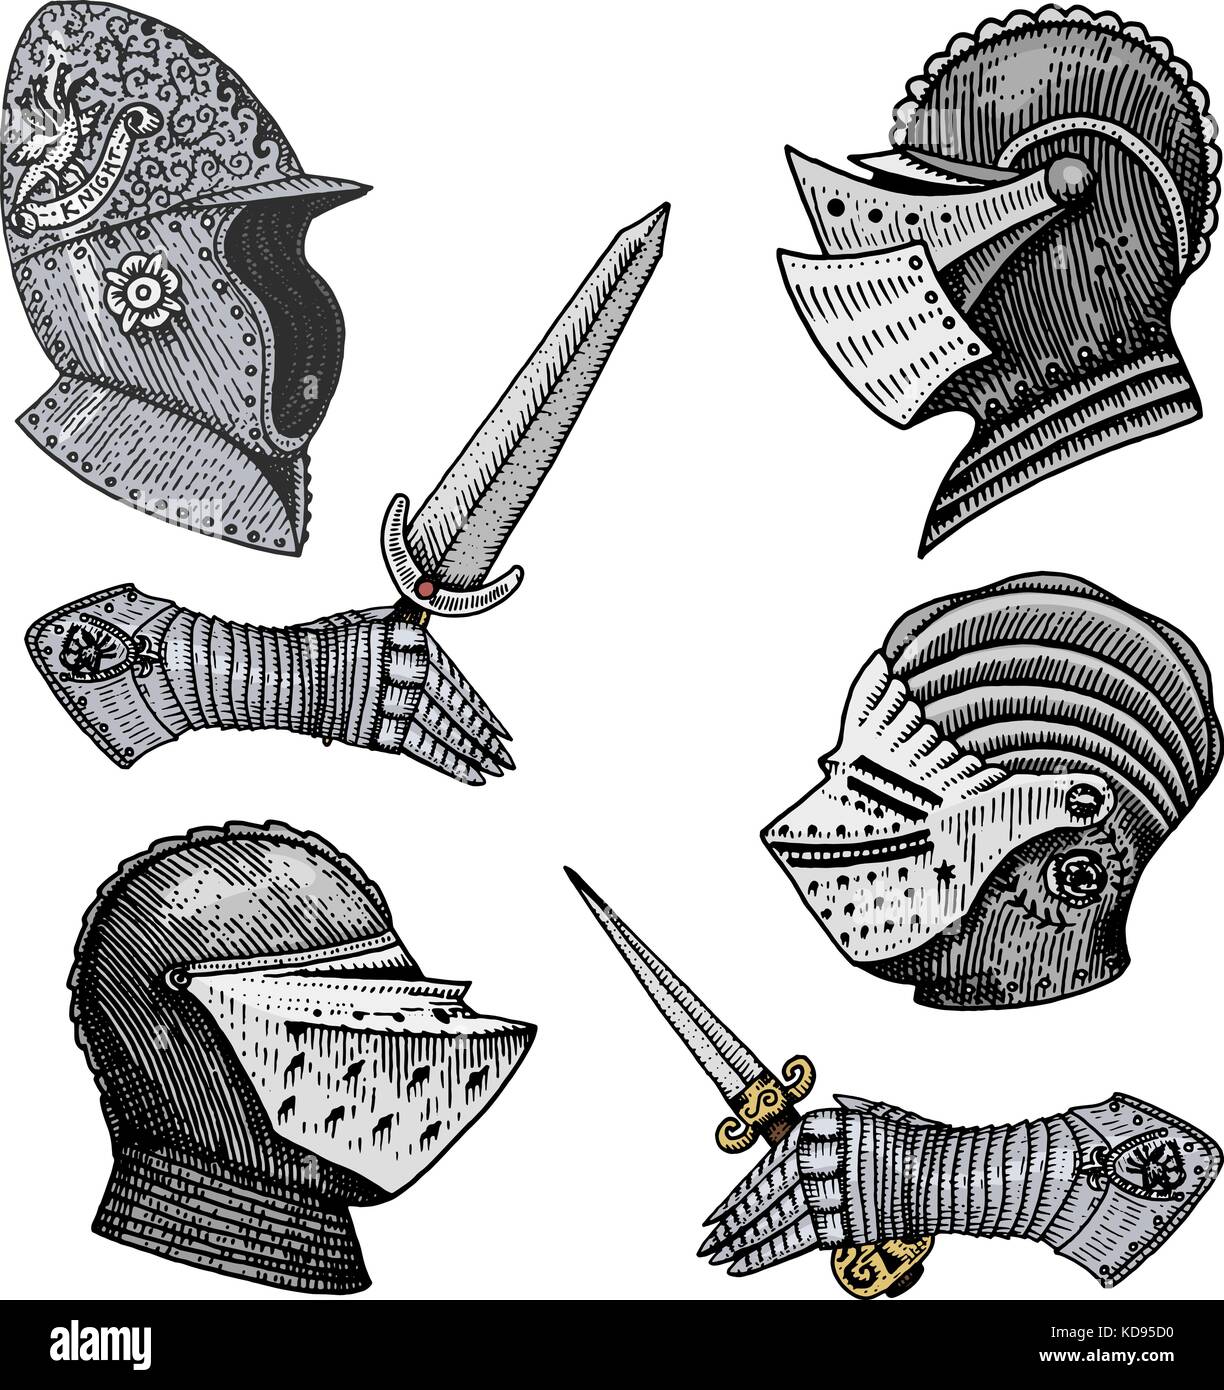 Set di simboli medioevali battaglia caschi per cavalieri o re, vintage, inciso disegnati a mano nel disegno o taglio di legno stile, vecchio cercando retrò romano. Illustrazione Vettoriale